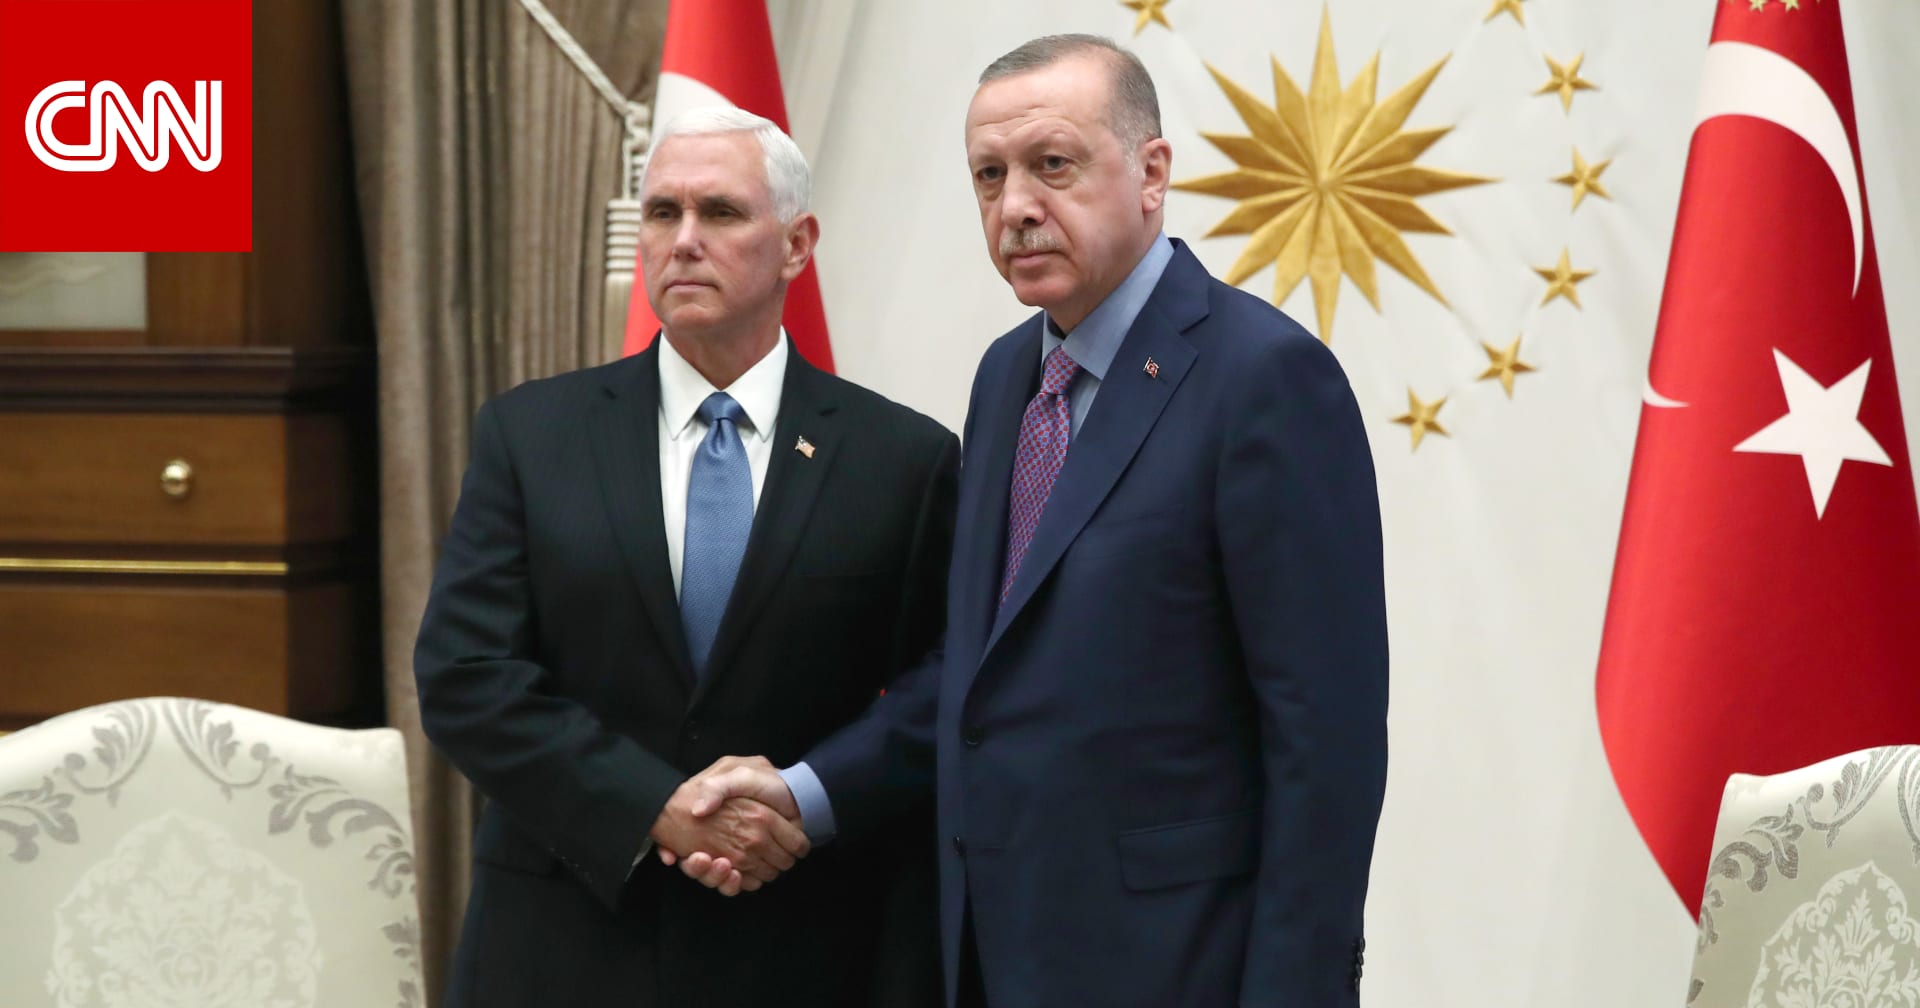 4 أمور انتبه لها باتفاق  تعليق  عمليات تركيا في سوريا بعد لقاء بنس وأردوغان - CNN Arabic